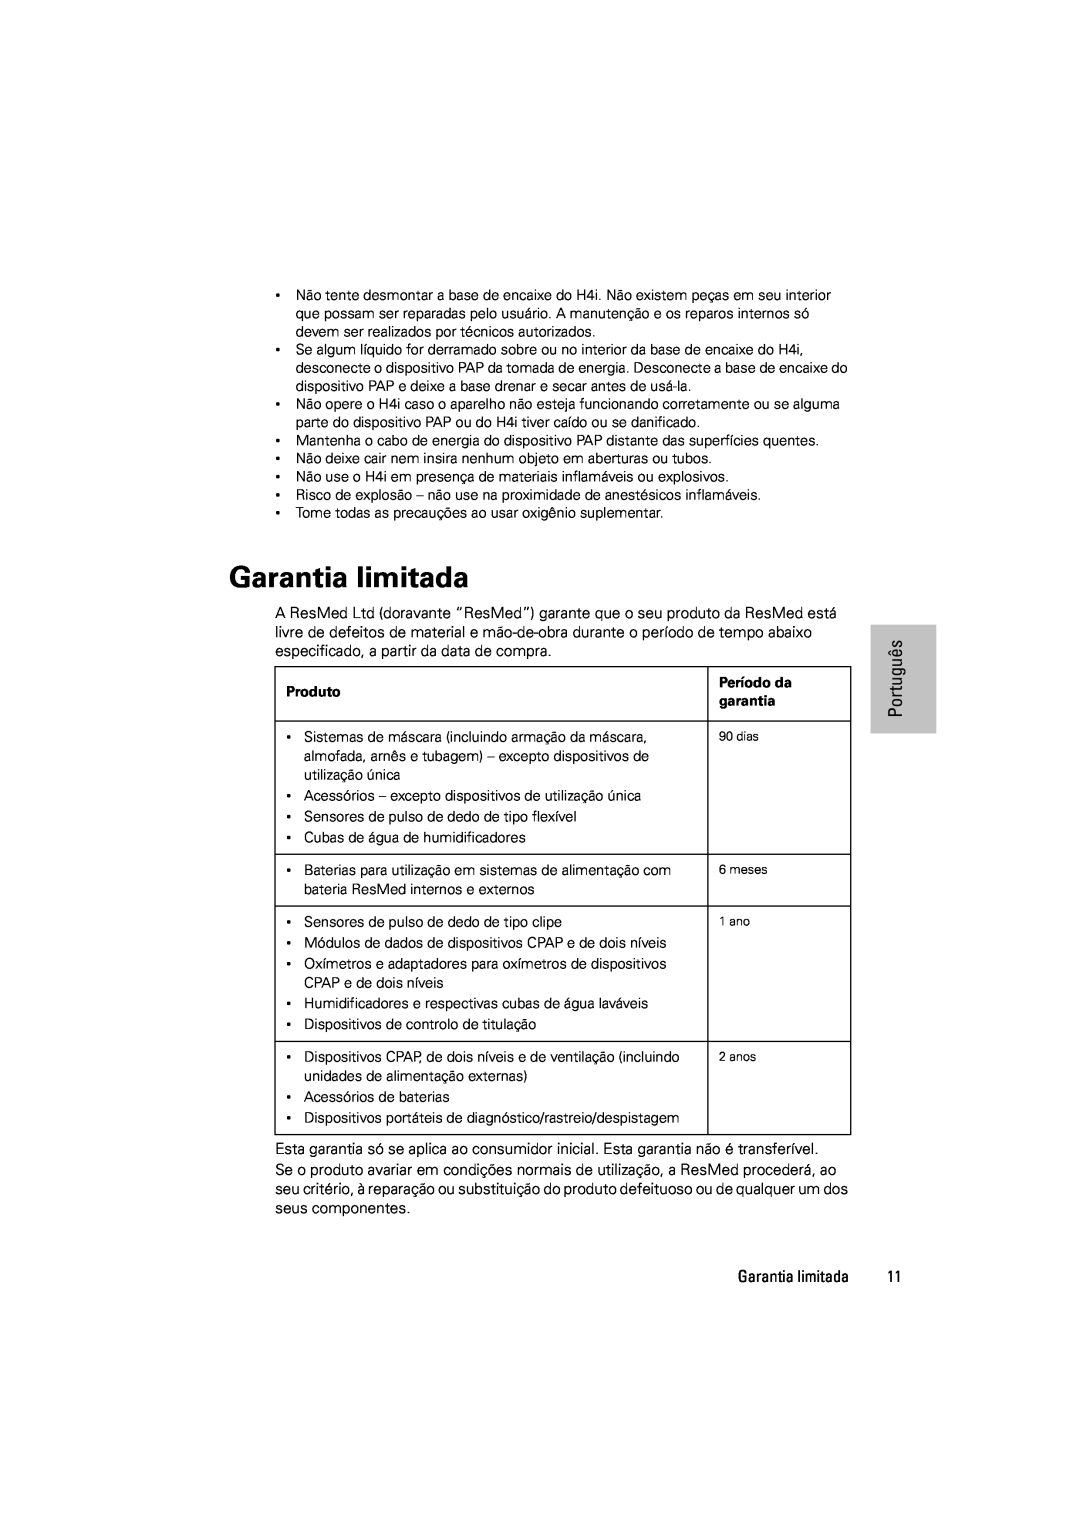 ResMed 248671/1 manual Garantia limitada, Português, Produto, Período da, garantia 